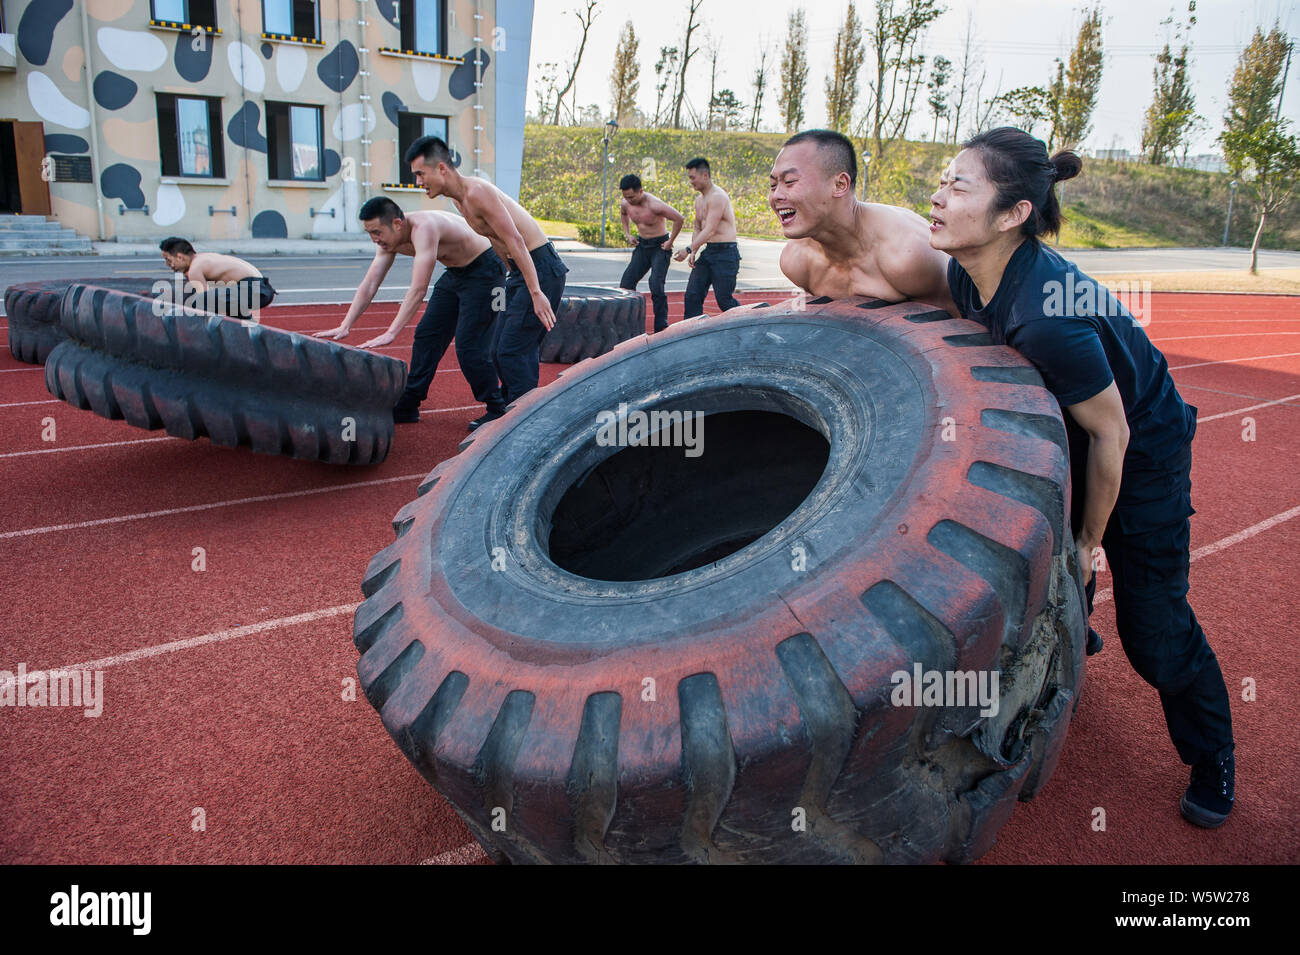 Mitglieder der Chengdu Heibao SWAT-Team nehmen Sie teil an einer Schulung zu einem Trainingslager in Chengdu City, im Südwesten Chinas Provinz Sichuan, 3 Deze Stockfoto